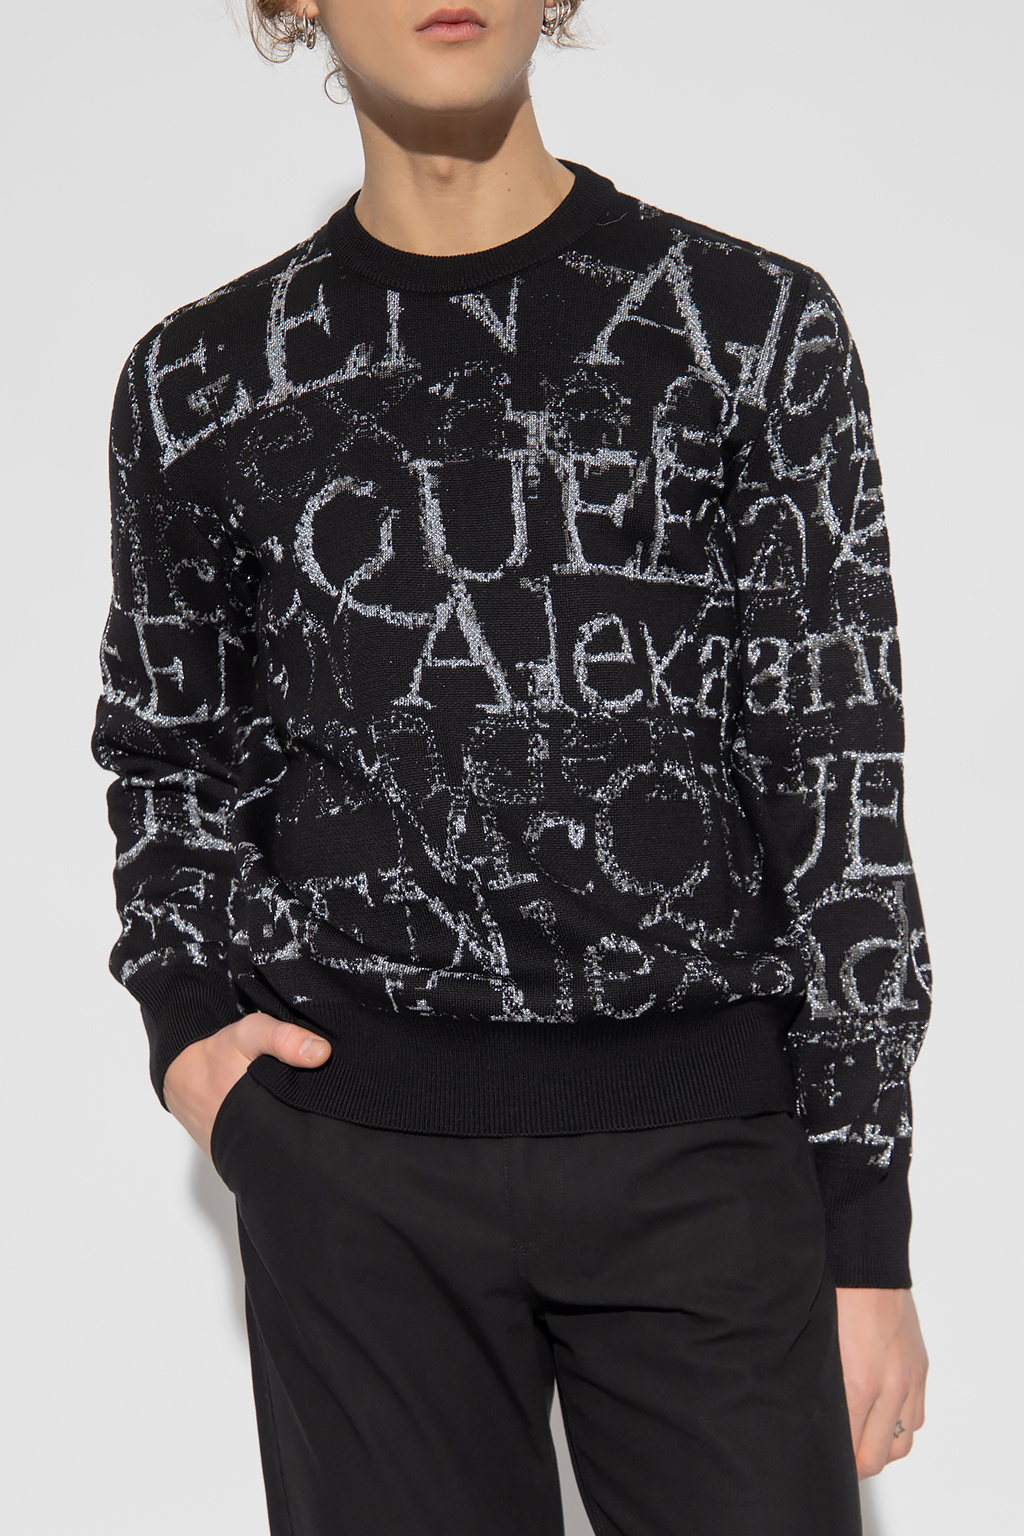 Alexander McQueen Alexander McQueen contrast stitching lambskin biker jacket